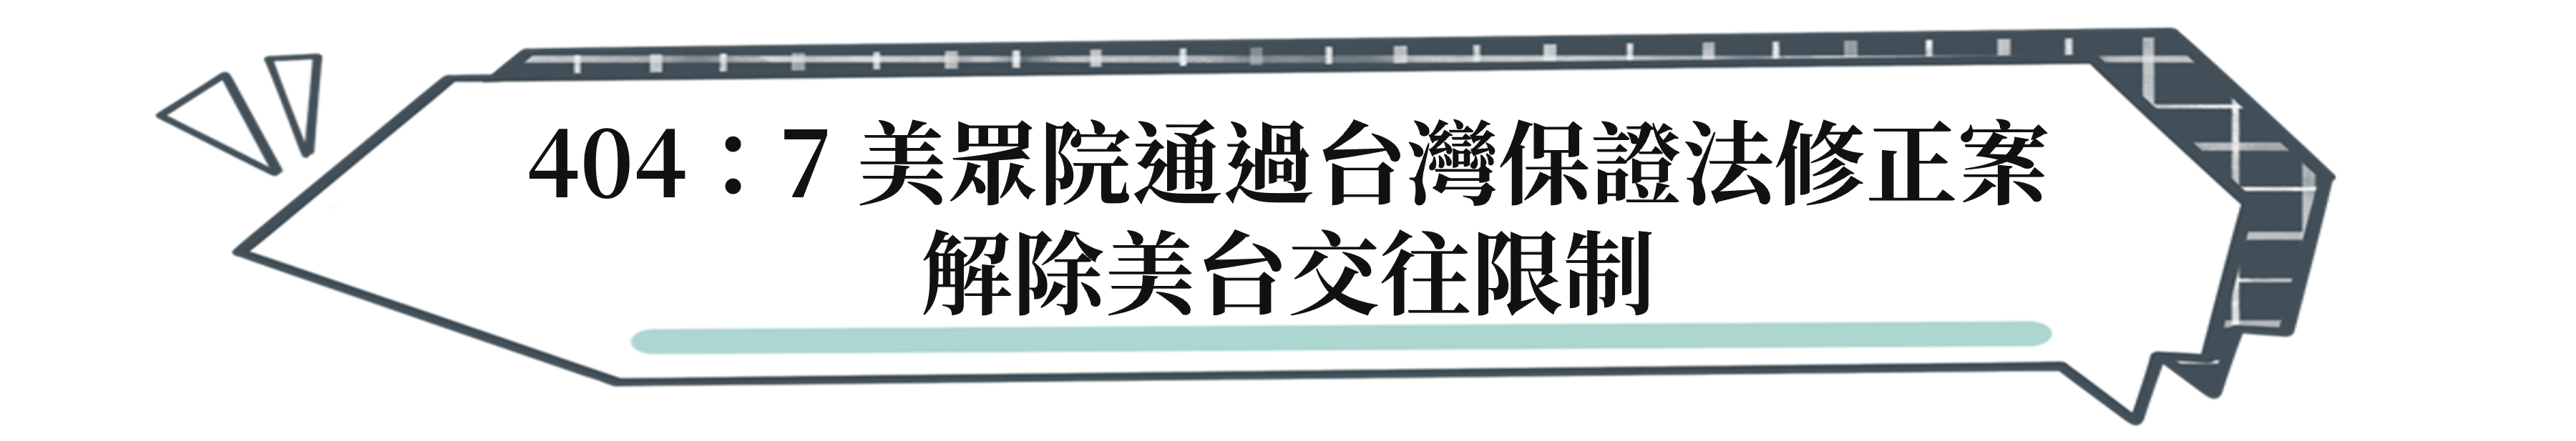 404：7 美眾院通過台灣保證法修正案 解除美台交往限制